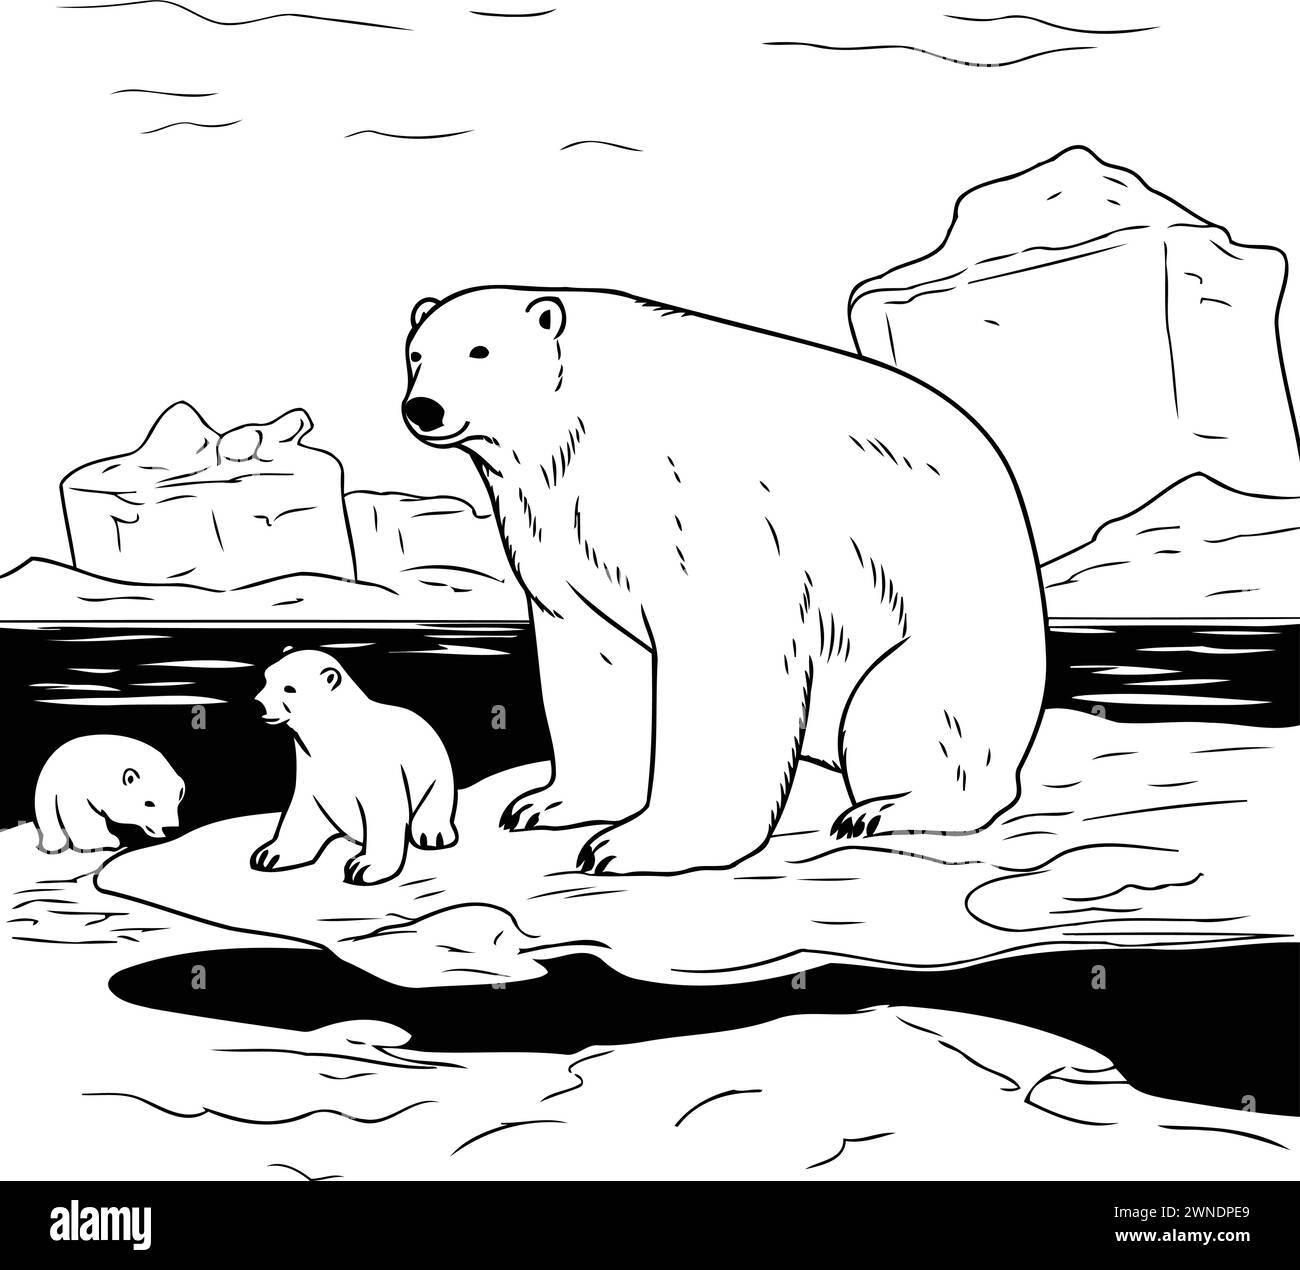 Eisbär mit Jungtier auf dem Eis. Schwarz-weiße Vektor-Illustration. Stock Vektor